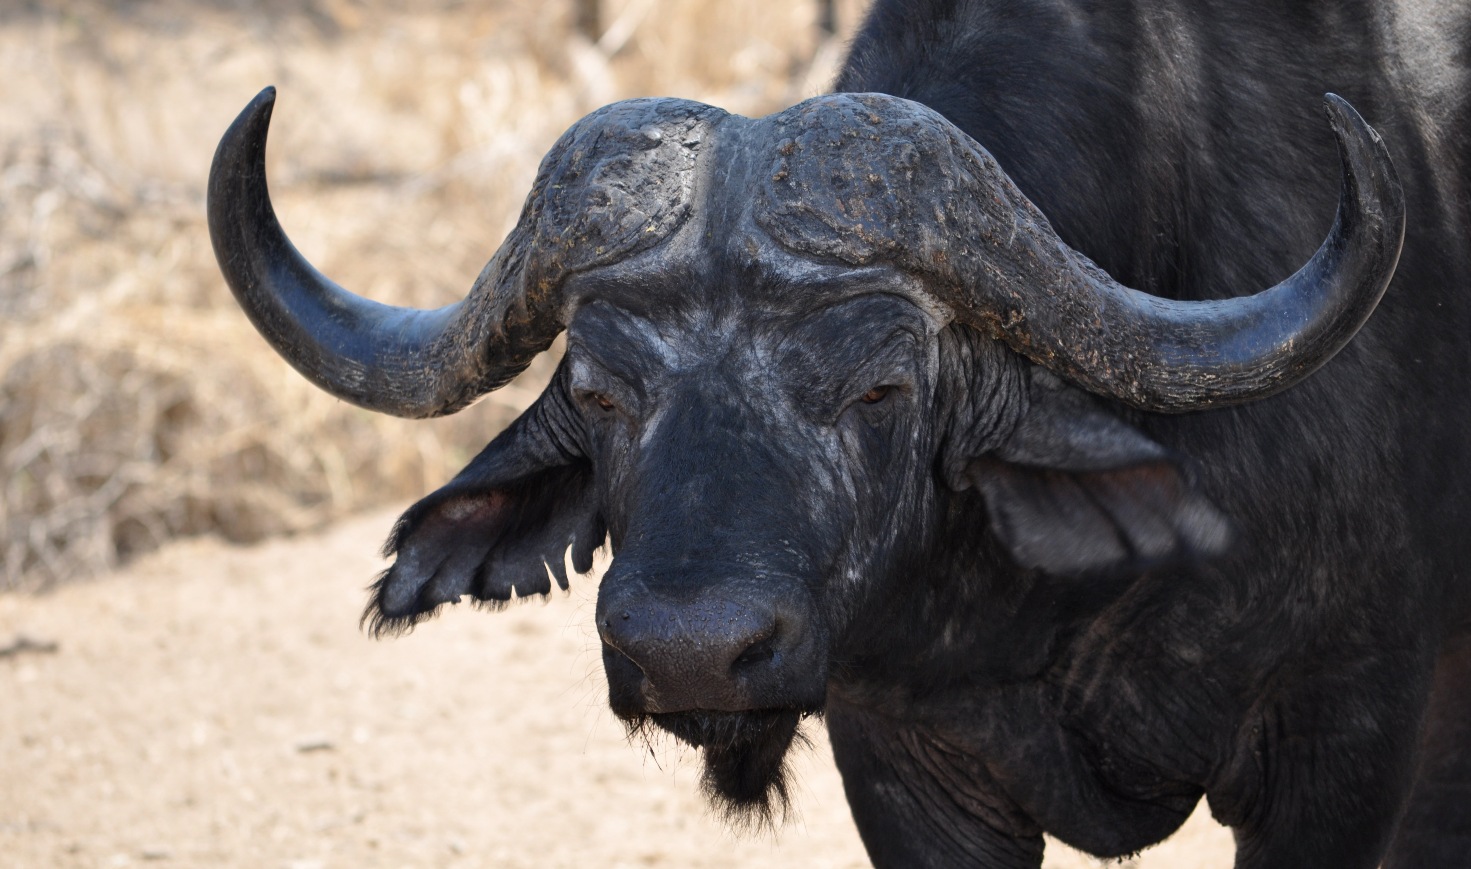 South Africa - The Watching Buffalo